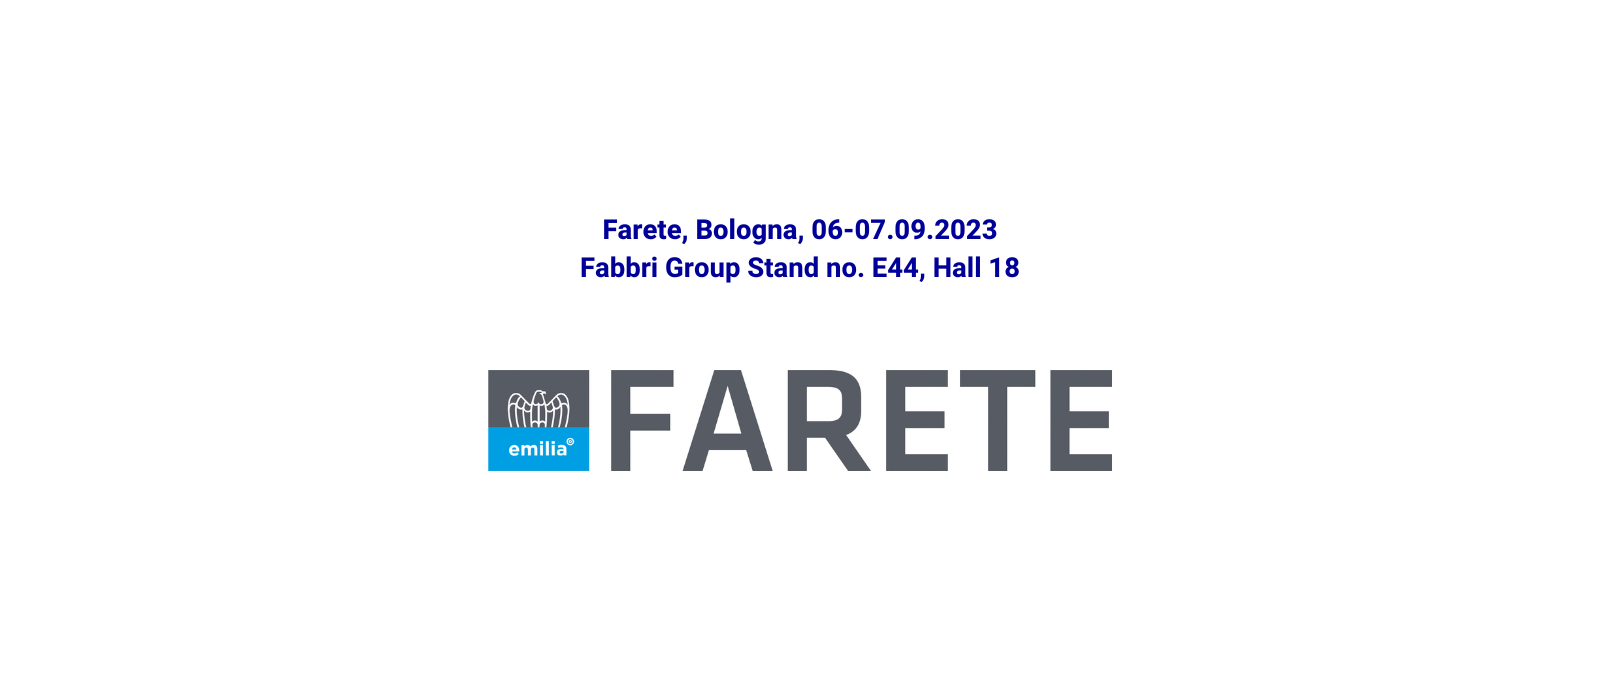 Appuntamento con Gruppo Fabbri a FARETE 2023